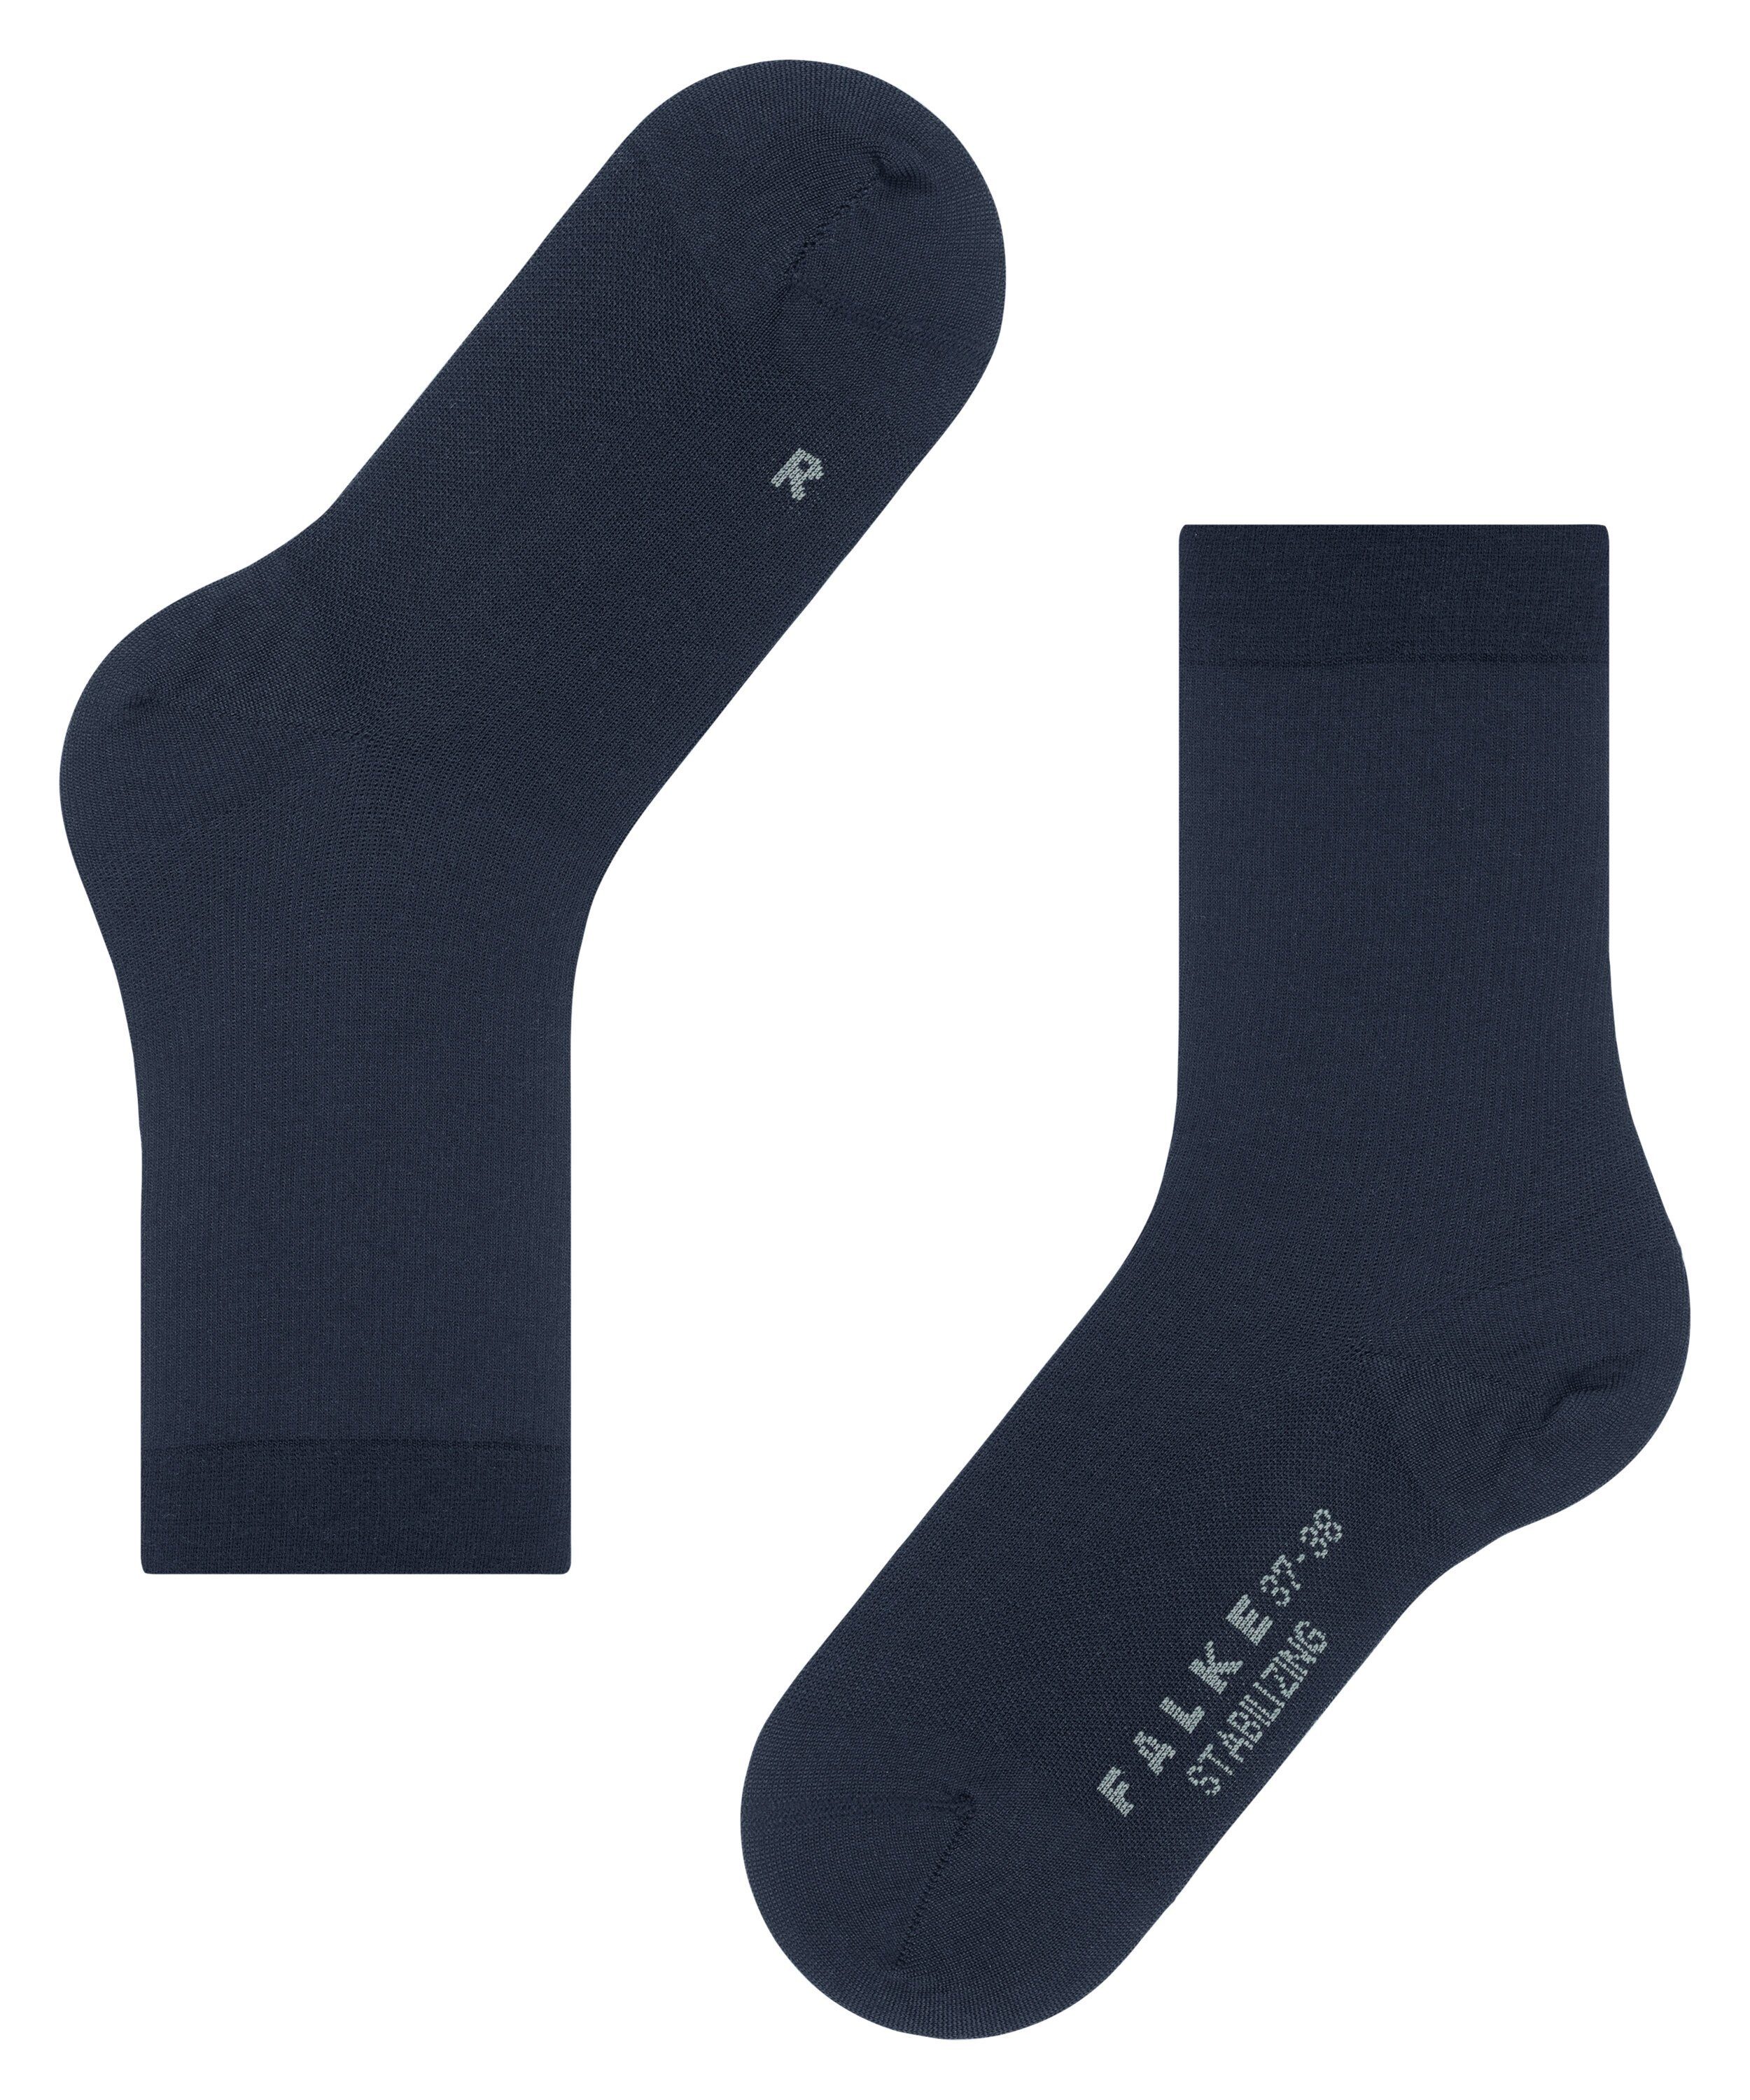 FALKE Wool Everyday blue (1-Paar) (6116) Stabilizing Socken space